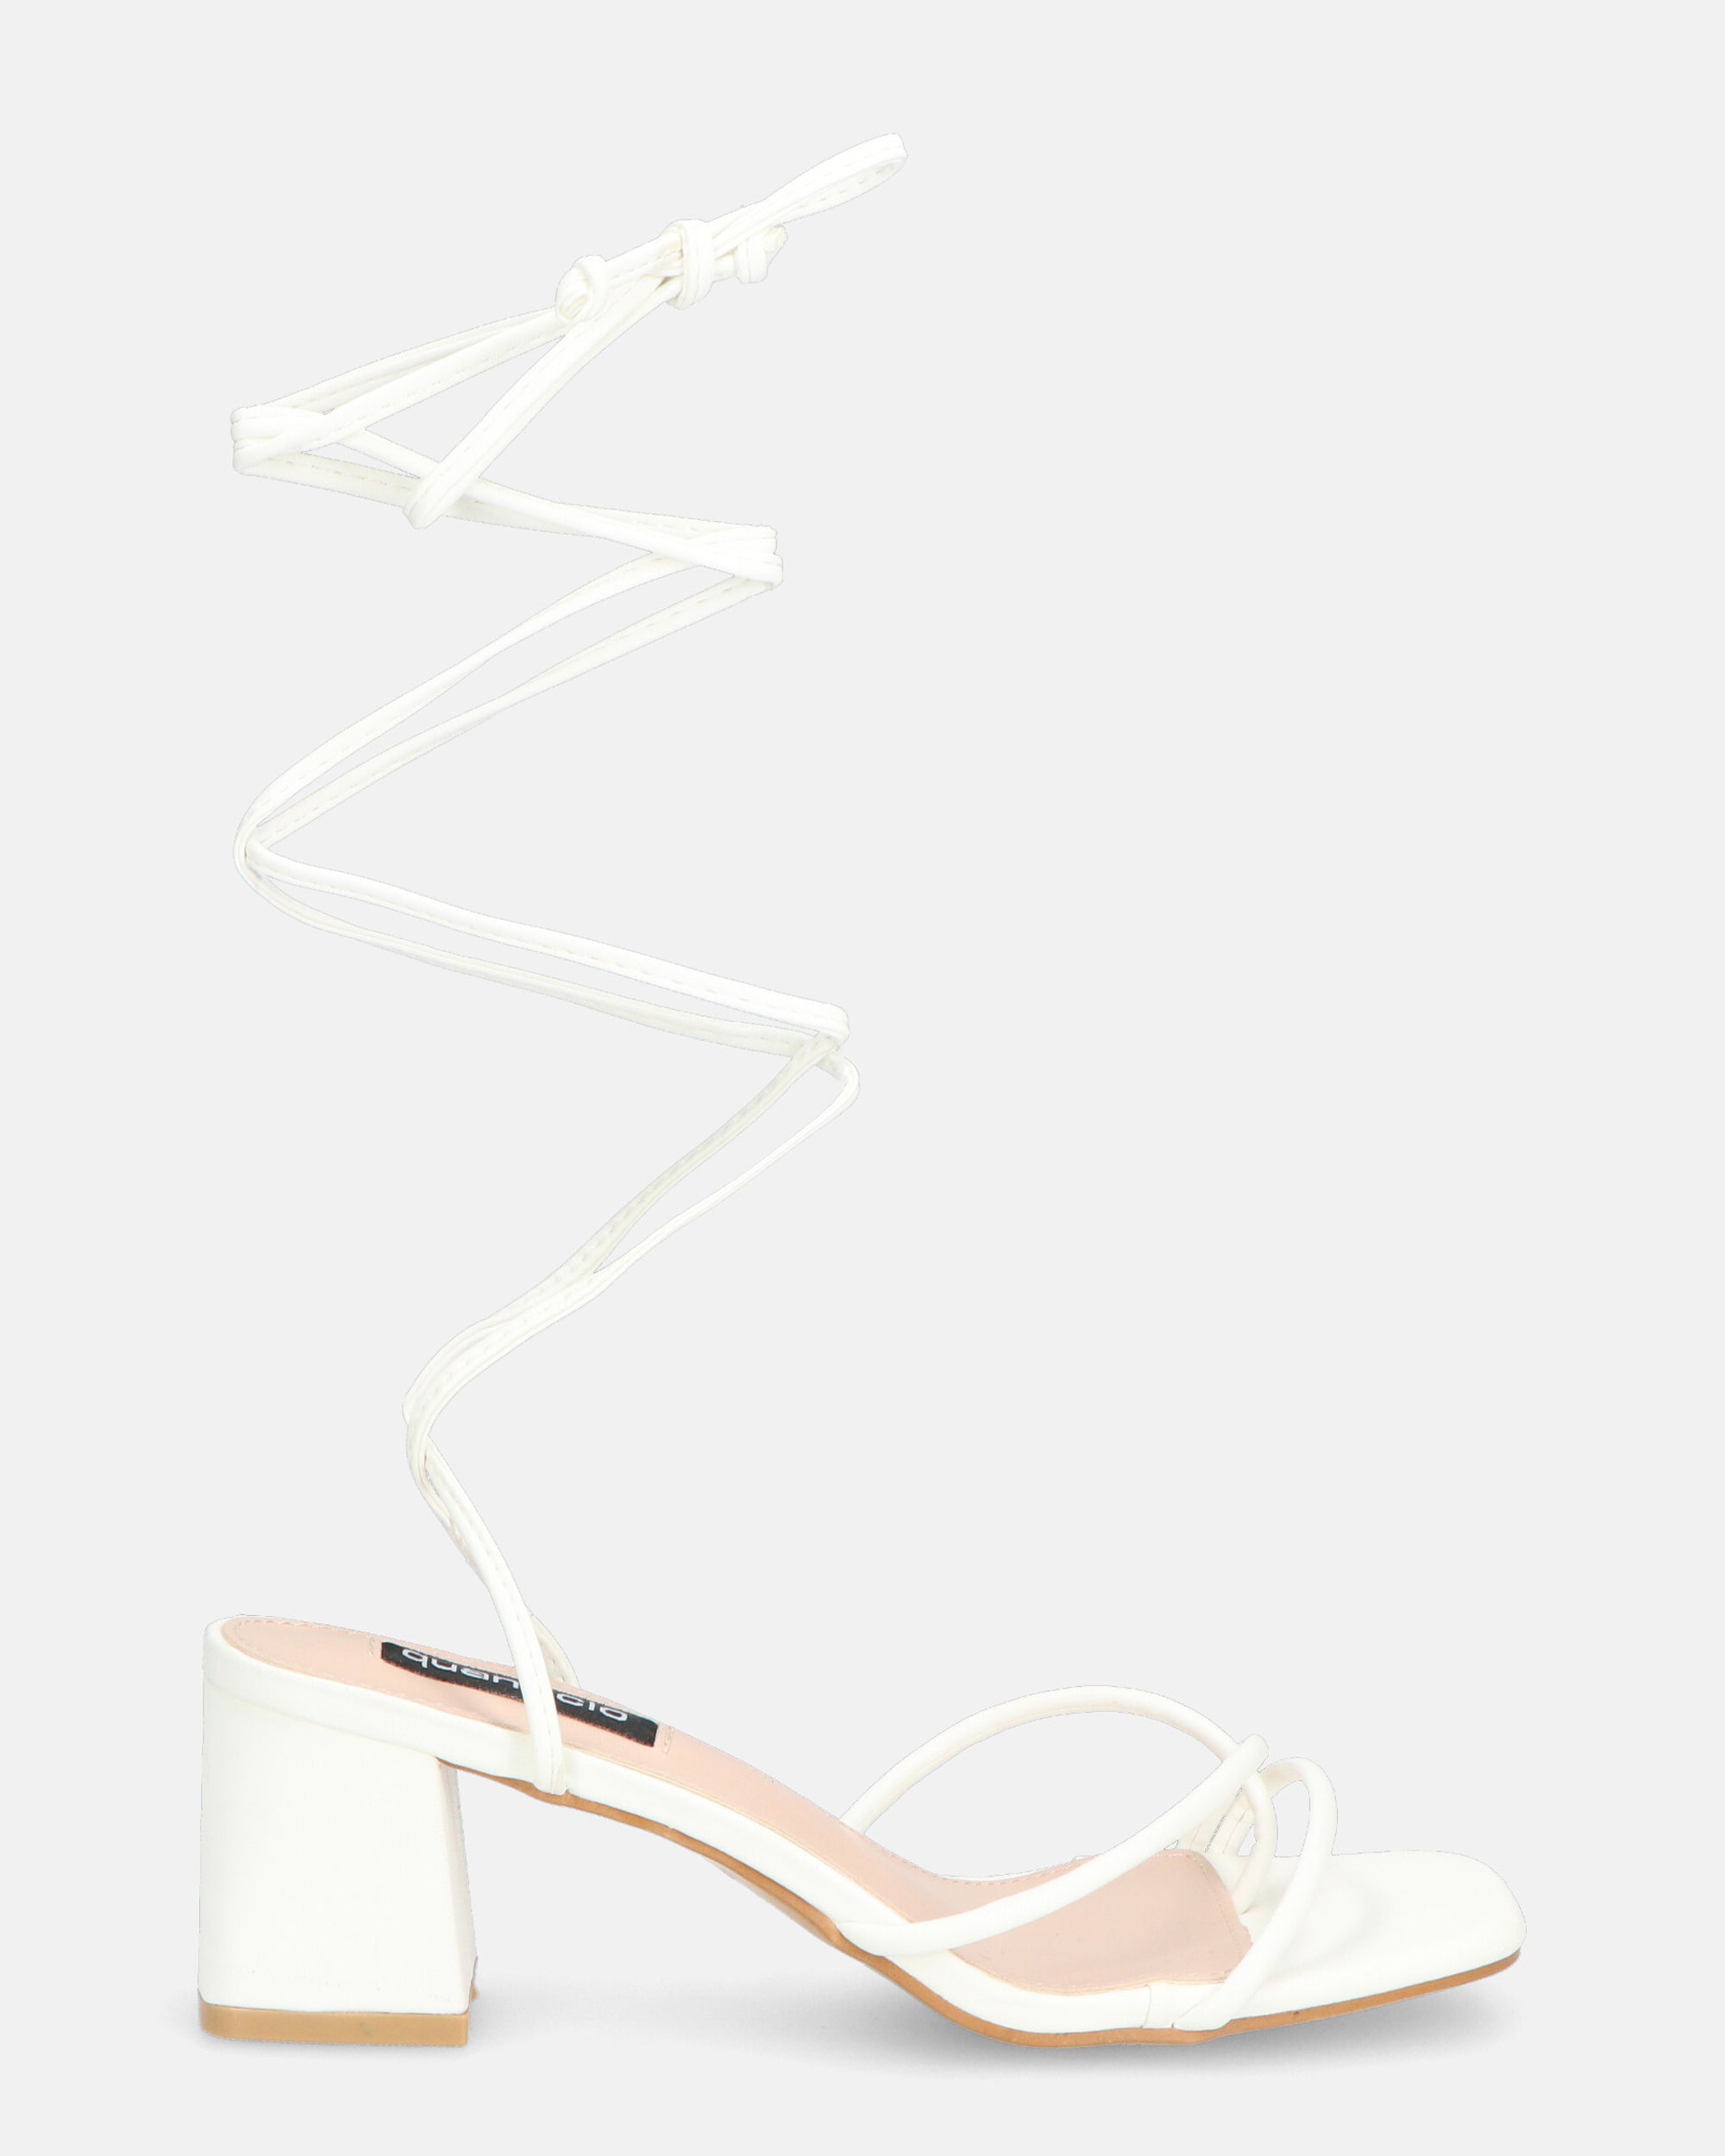 HOARA - heeled sandals in white PU